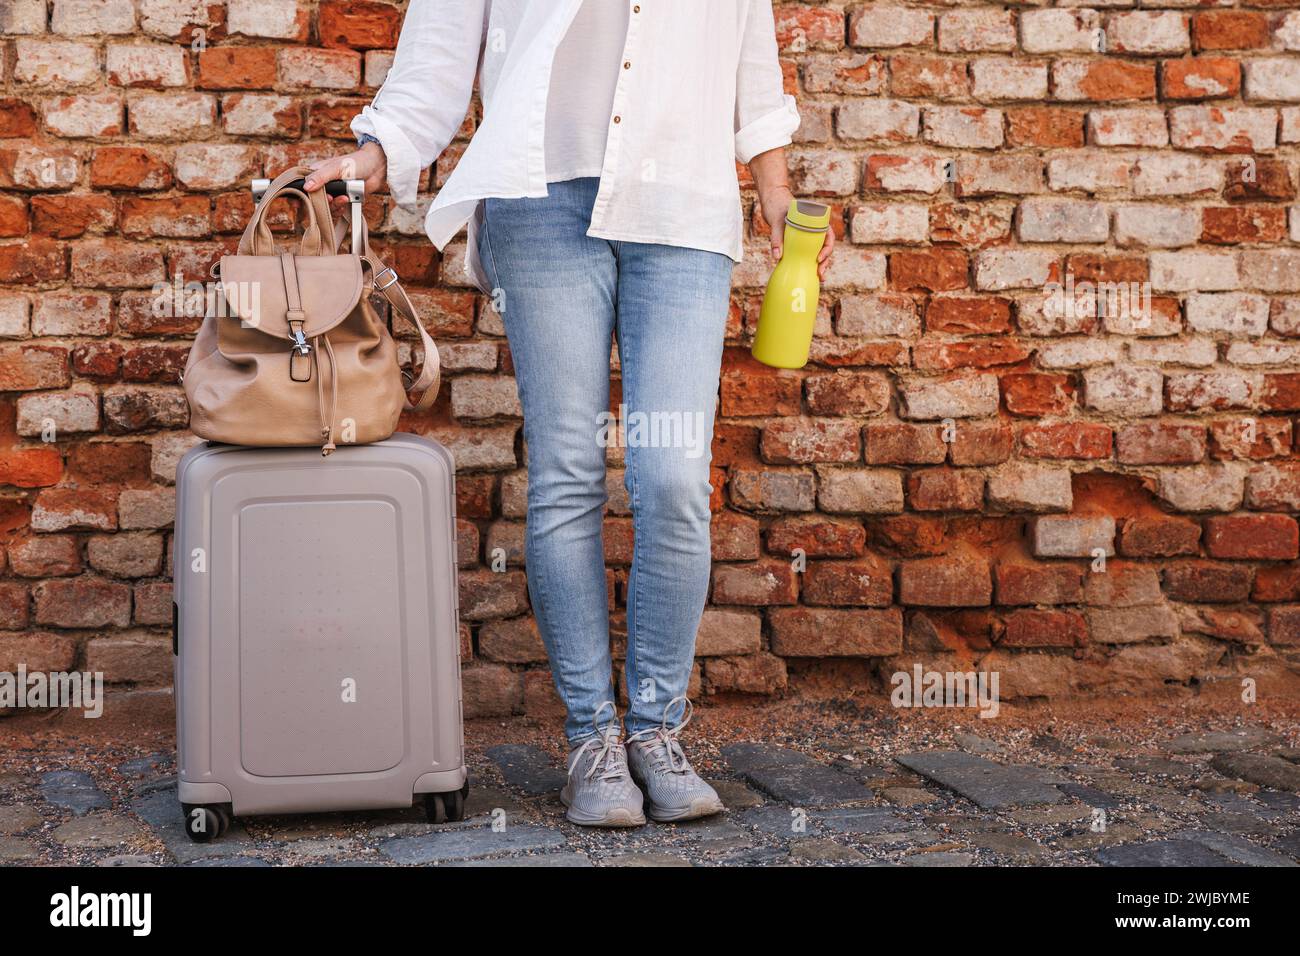 Femme touriste avec valise, sac à dos et bouteille d'eau debout au mur de briques sur la rue de la ville. Concept de voyage et de vacances Banque D'Images